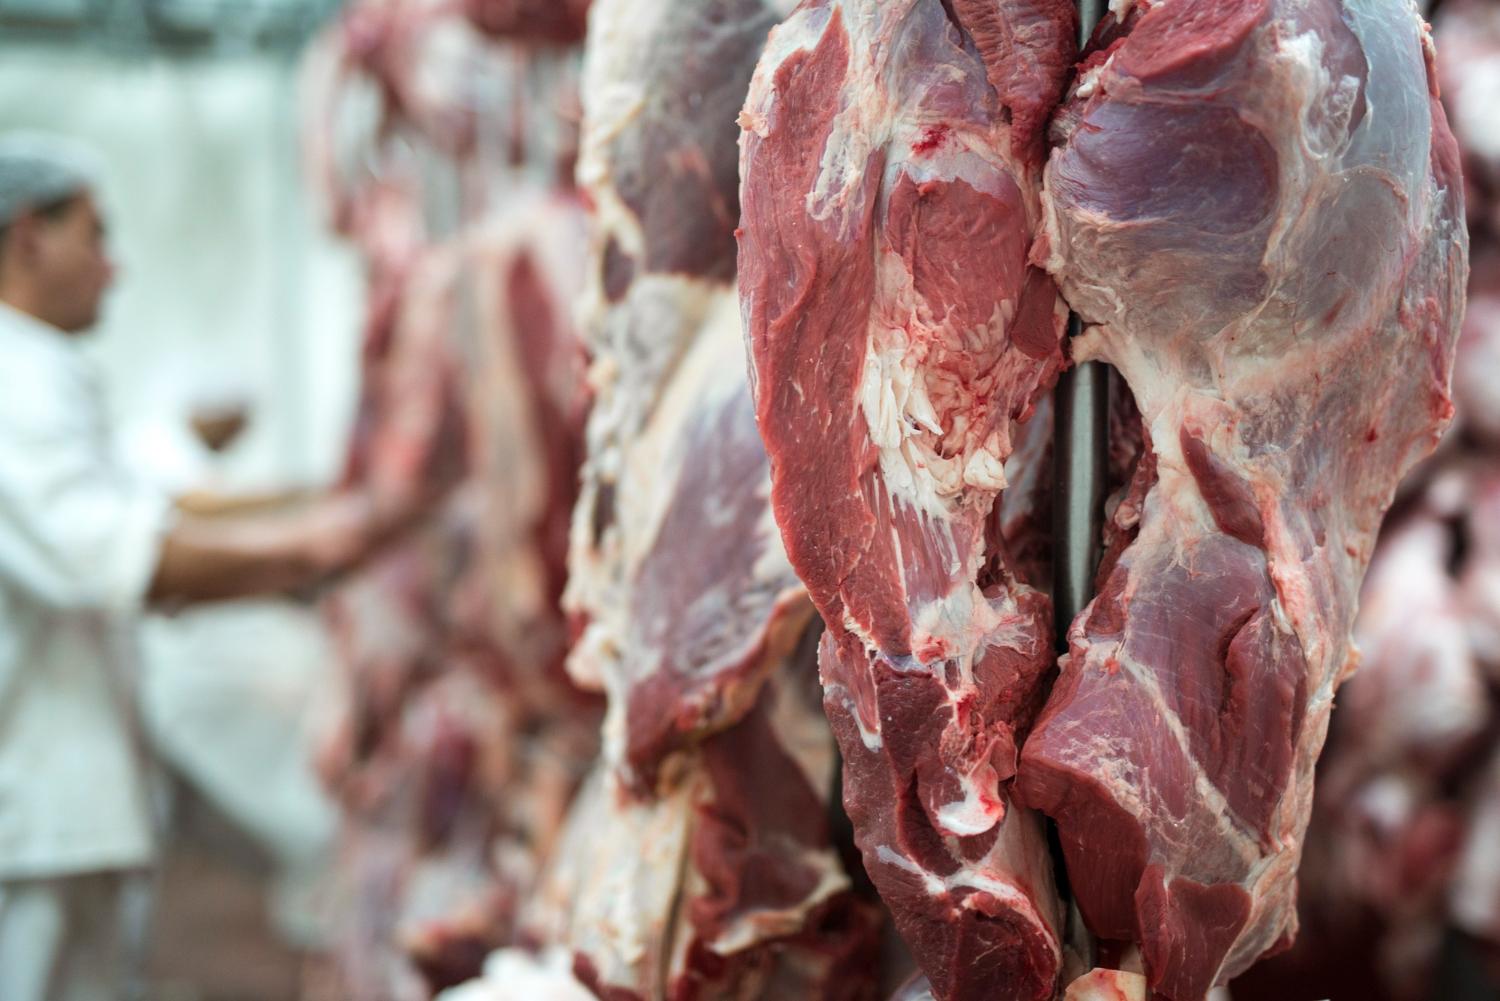 Novos mercados podem ajudar carne brasileira a bater recorde de exportação em 2022. (Fonte: Aleksandarlittlewolf/Freepik/Reprodução)